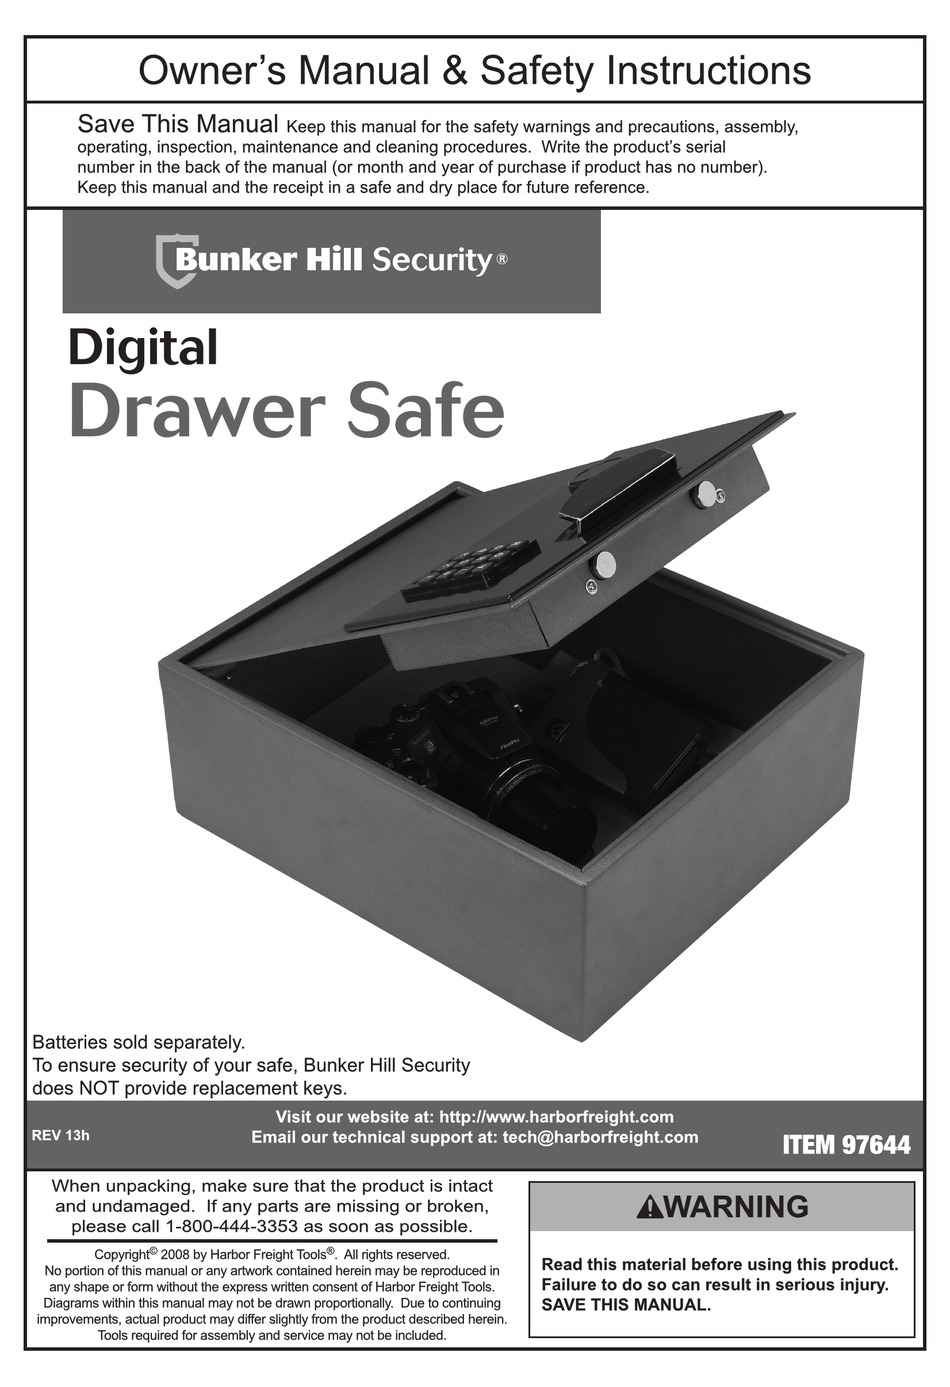 bunker hill digital safe 45891 manual